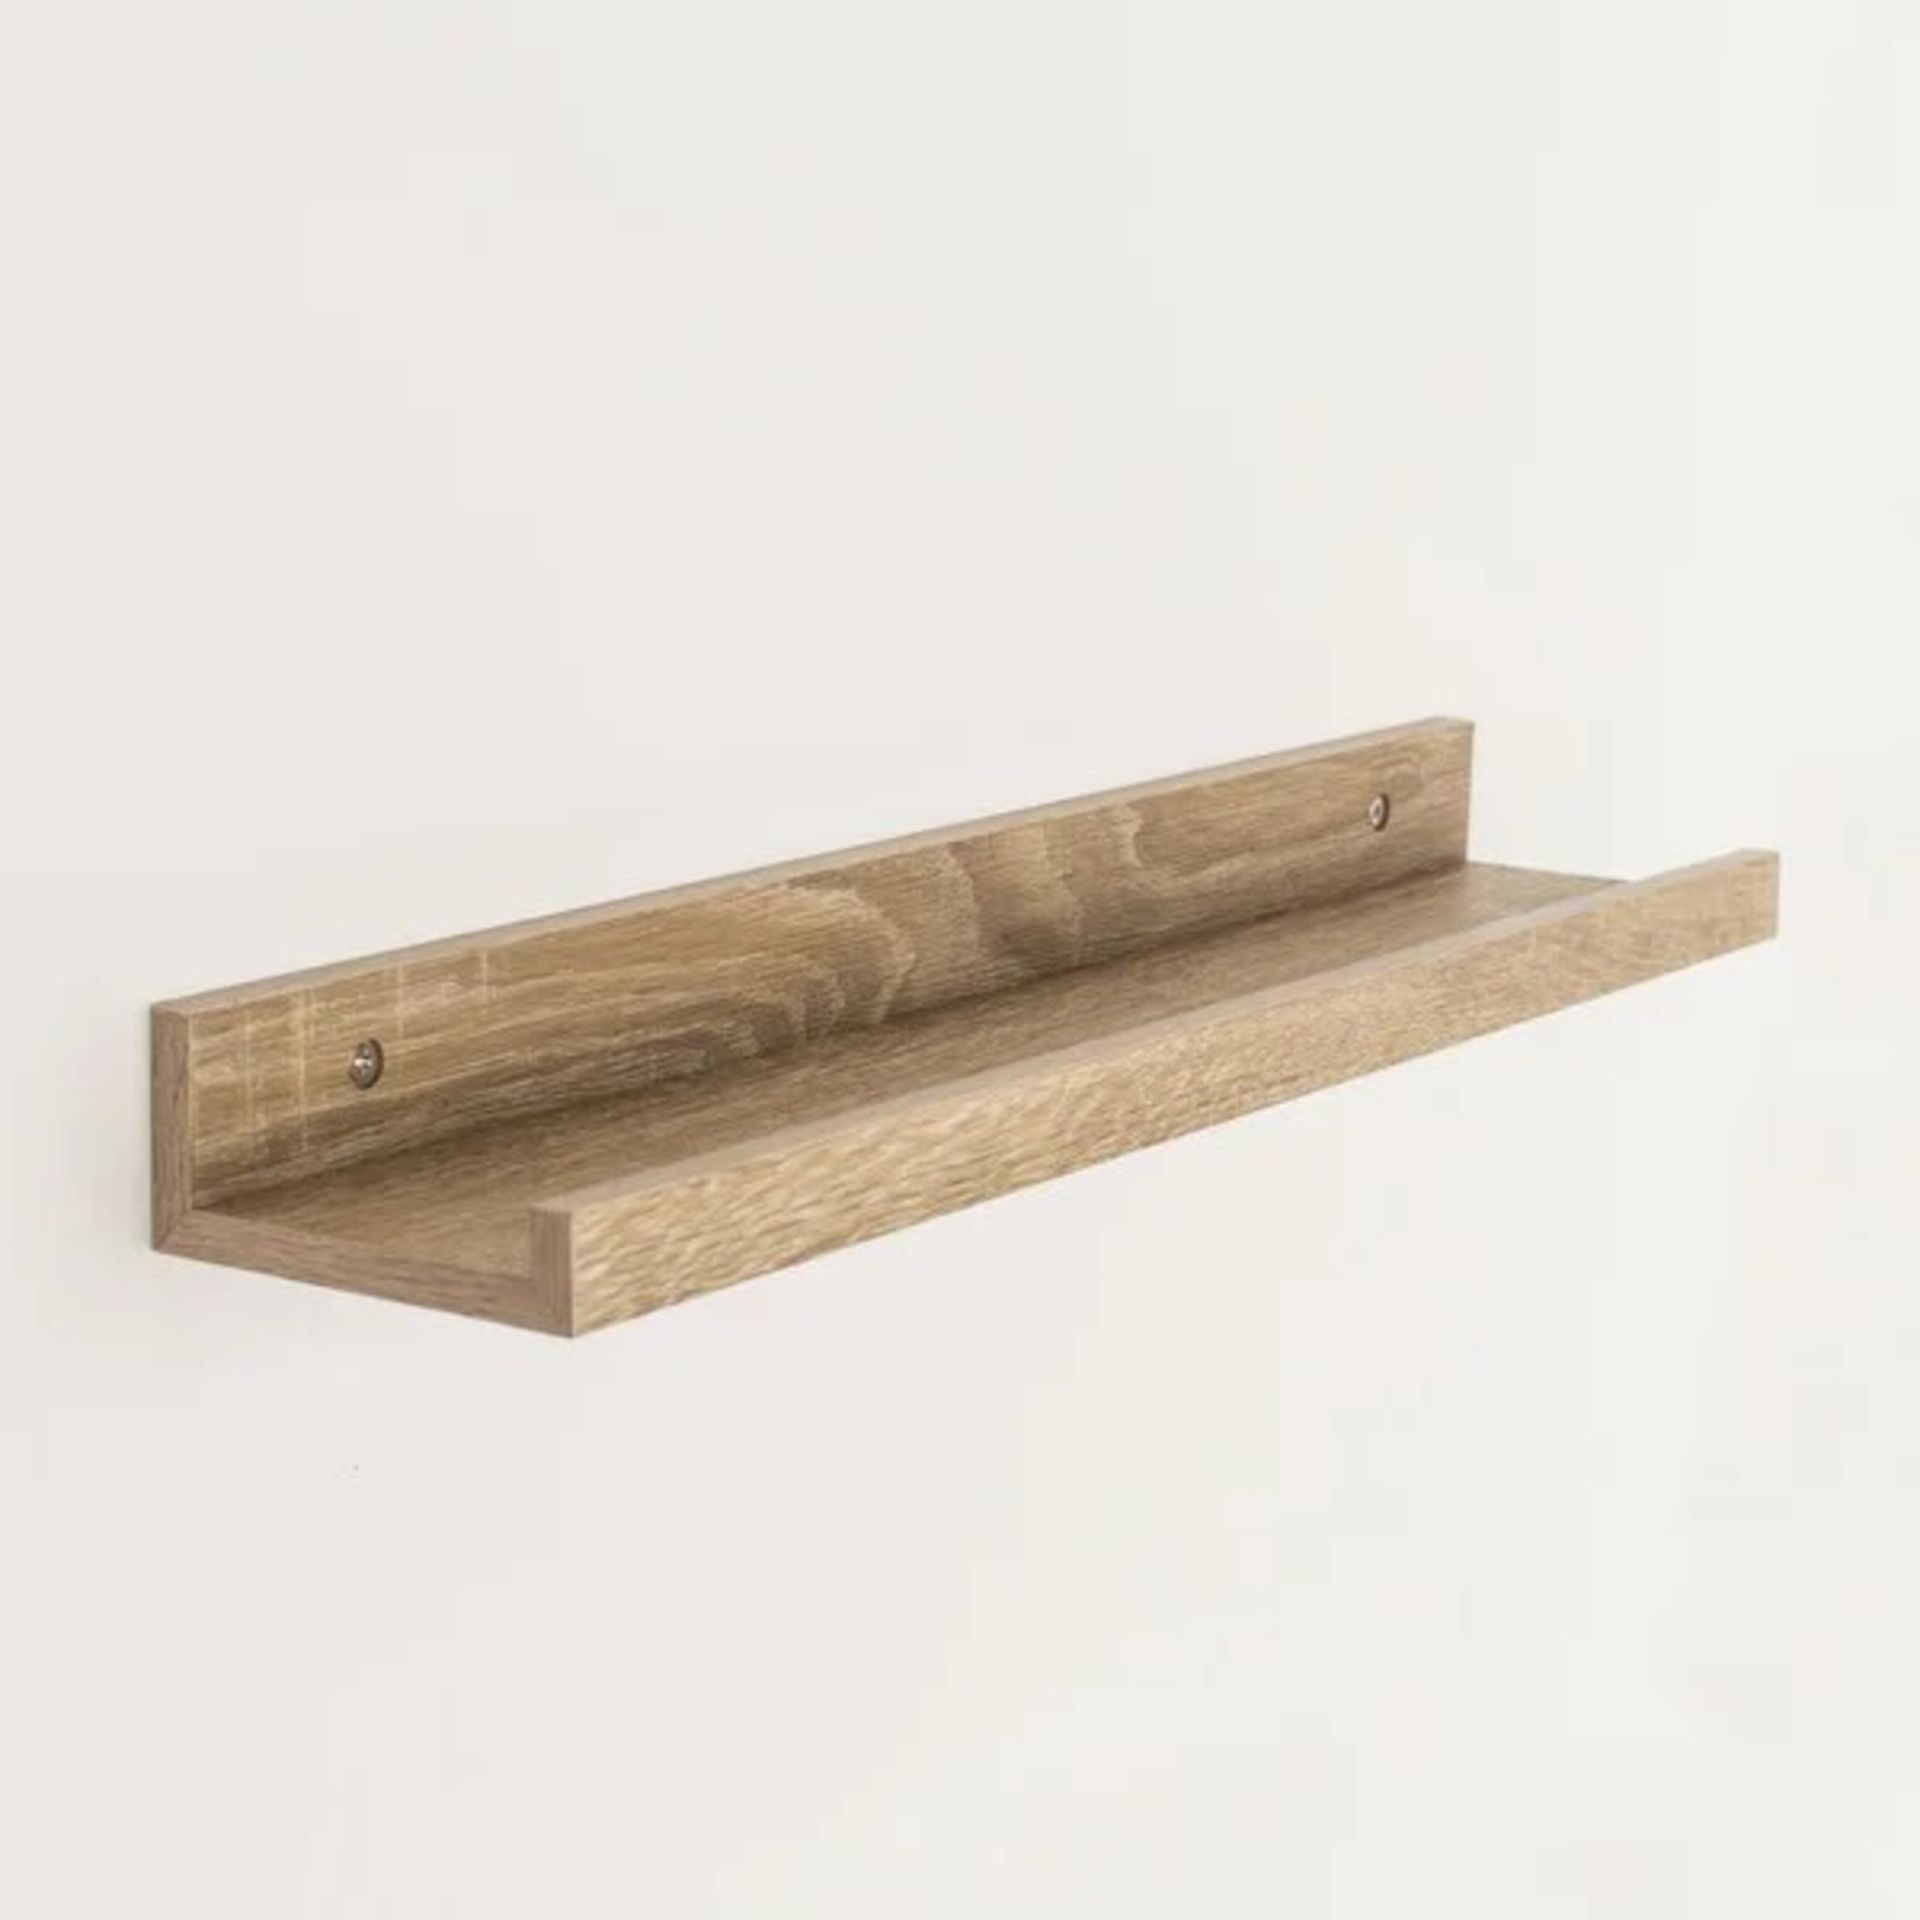 RRP £12.99 - Dura Shelf Kit - Size: 4.6" H x 48" W x 10" D, Finish: Oak - Image 2 of 2